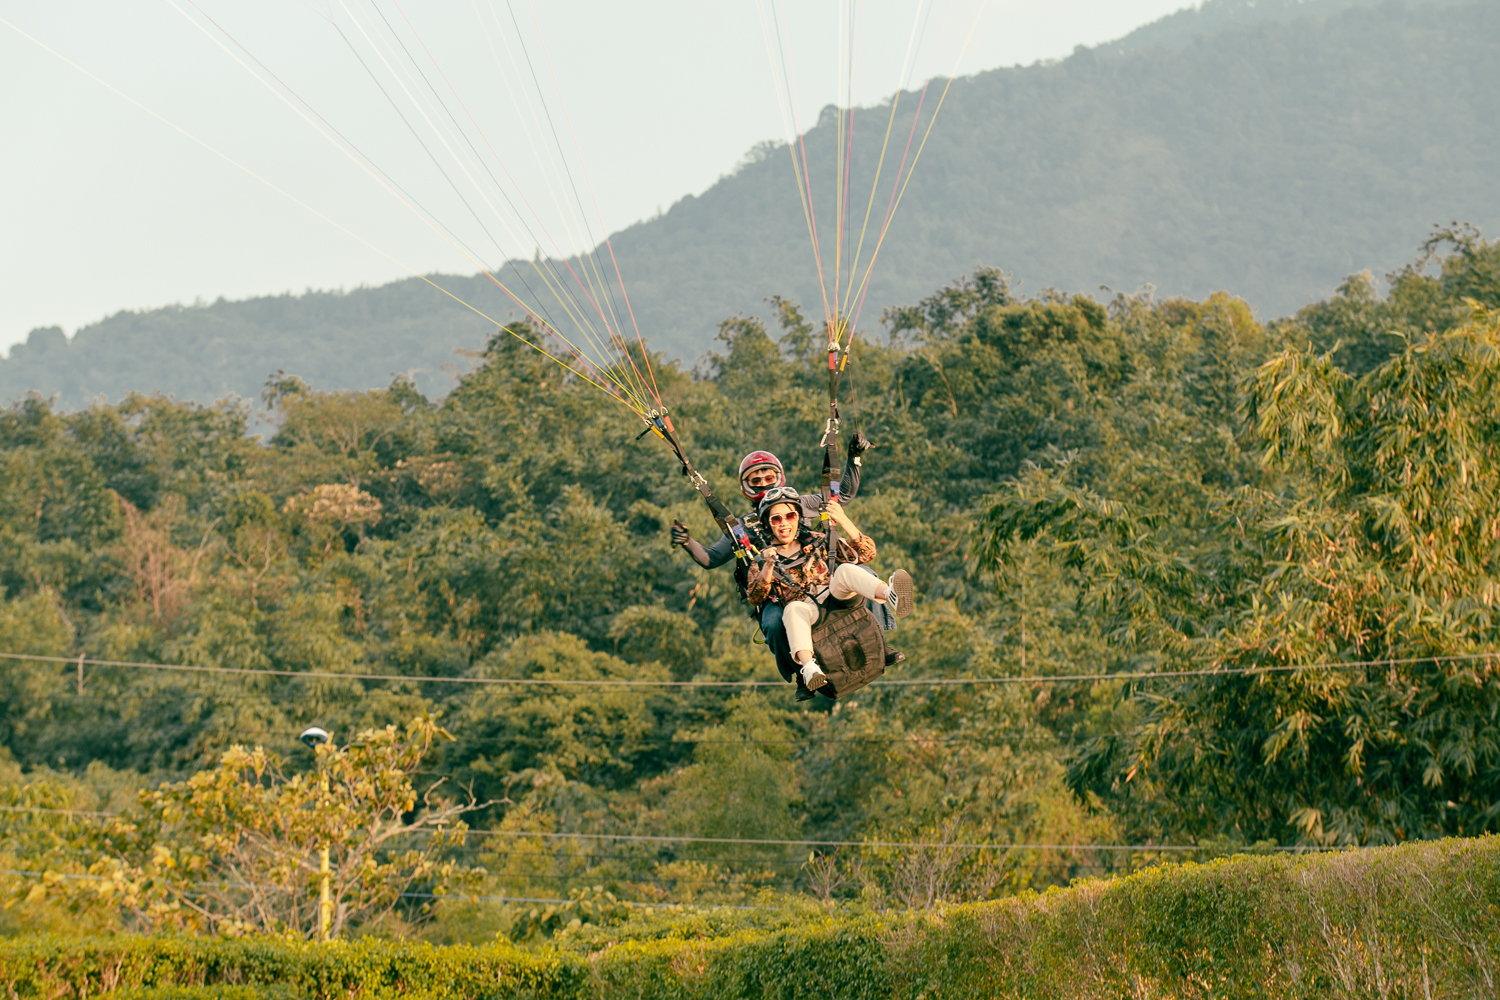 虎嘯山莊飛行傘體驗